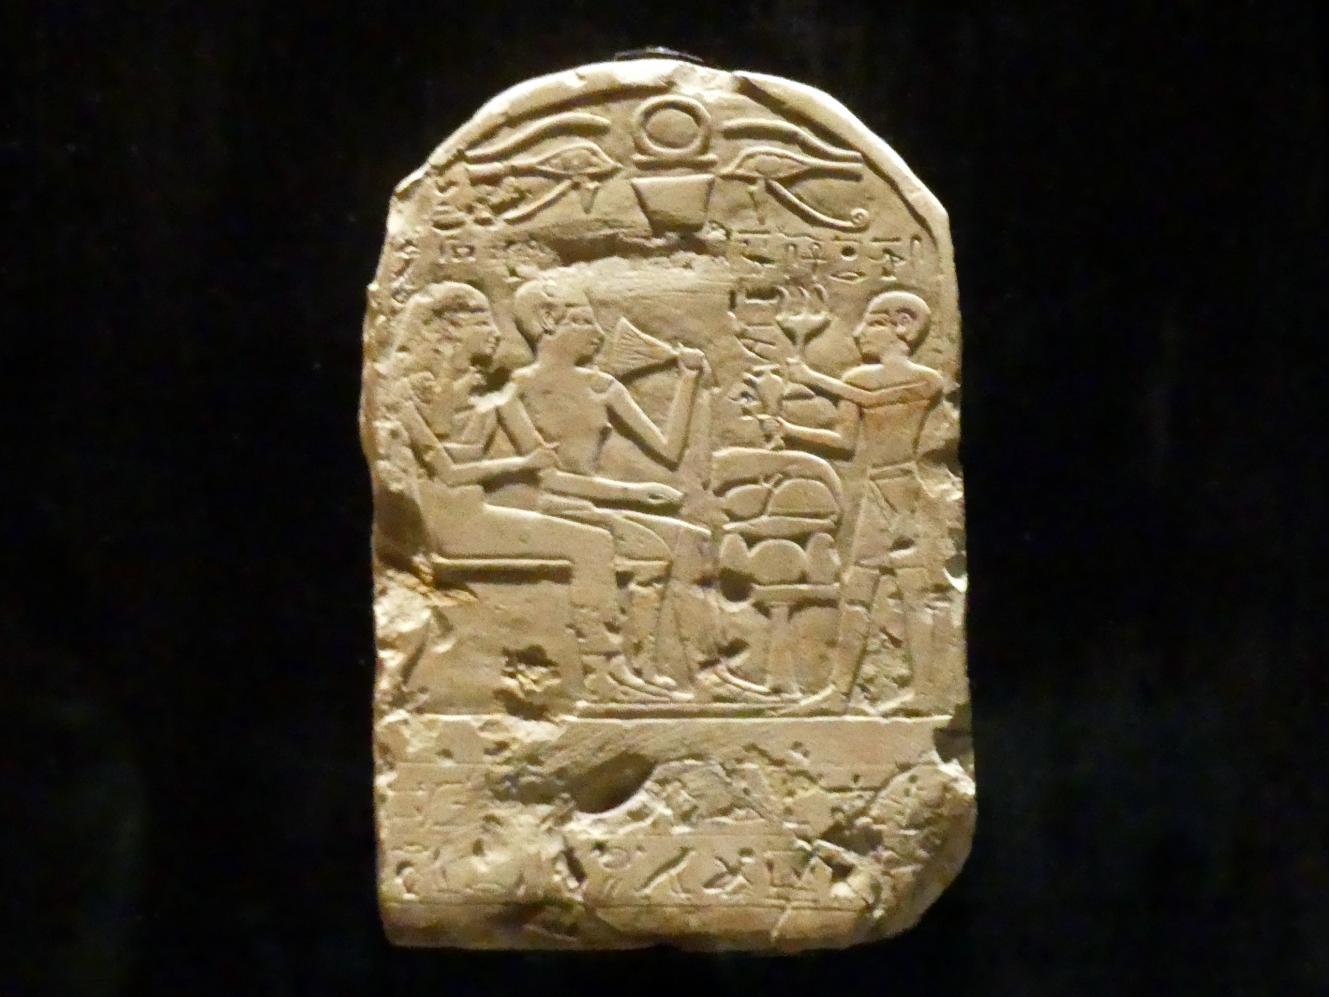 Stele der Tjatja und ihres Mannes, 18. Dynastie, Undatiert, 1600 v. Chr., Bild 1/2